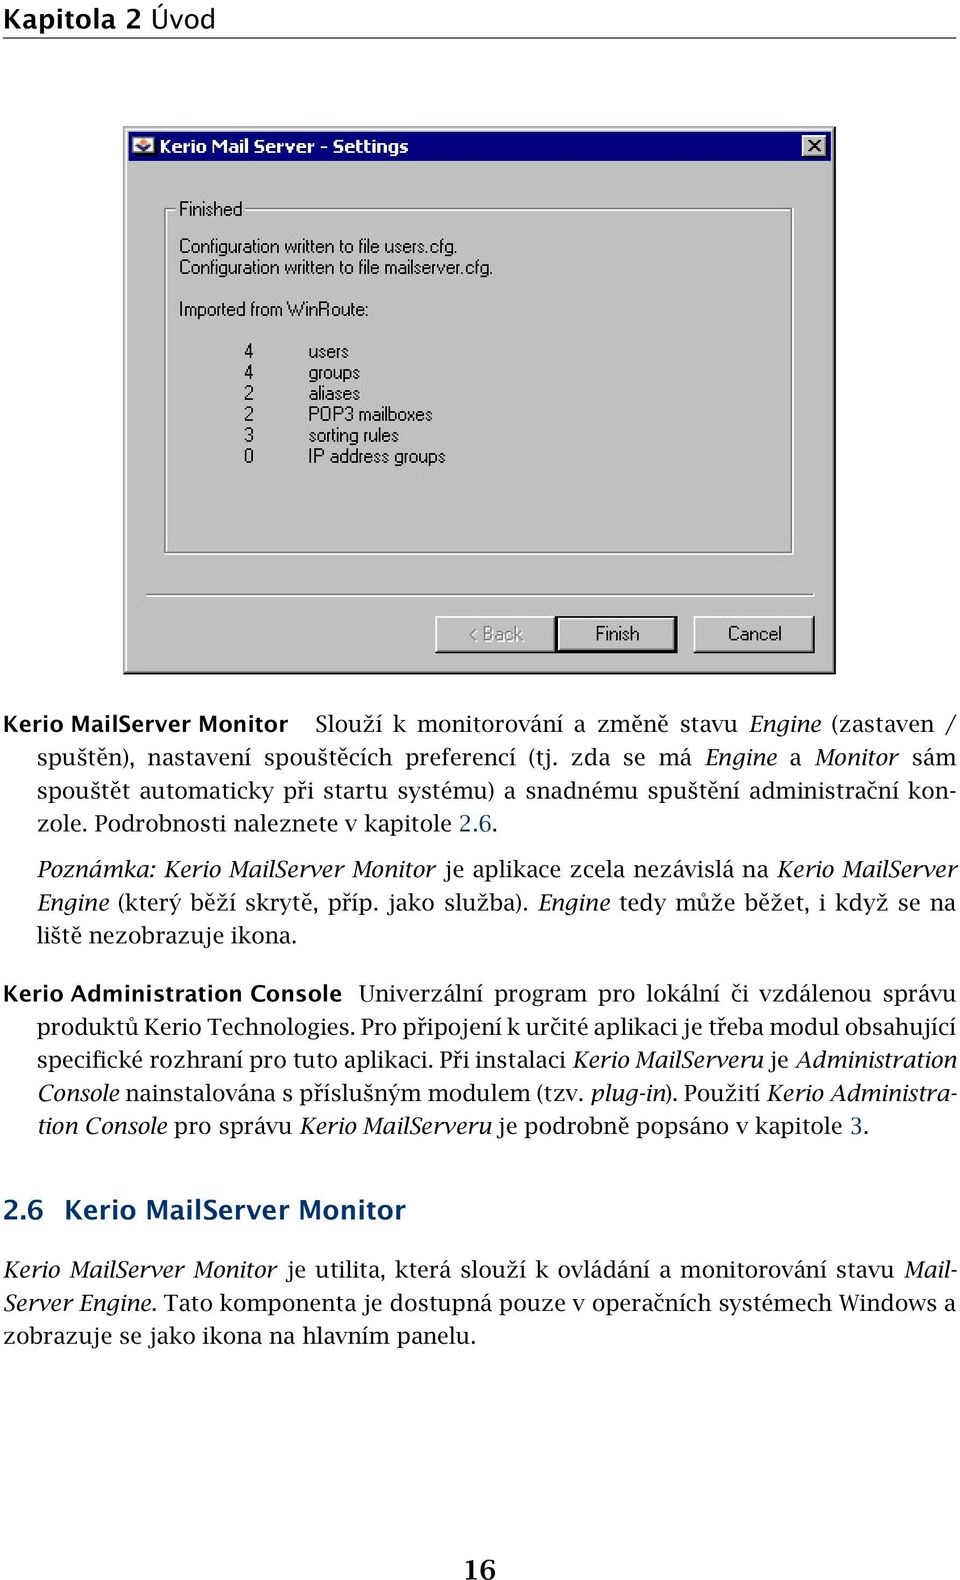 Poznámka: Kerio MailServer Monitor je aplikace zcela nezávislá na Kerio MailServer Engine (který běží skrytě, příp. jako služba). Engine tedy může běžet, i když se na liště nezobrazuje ikona.